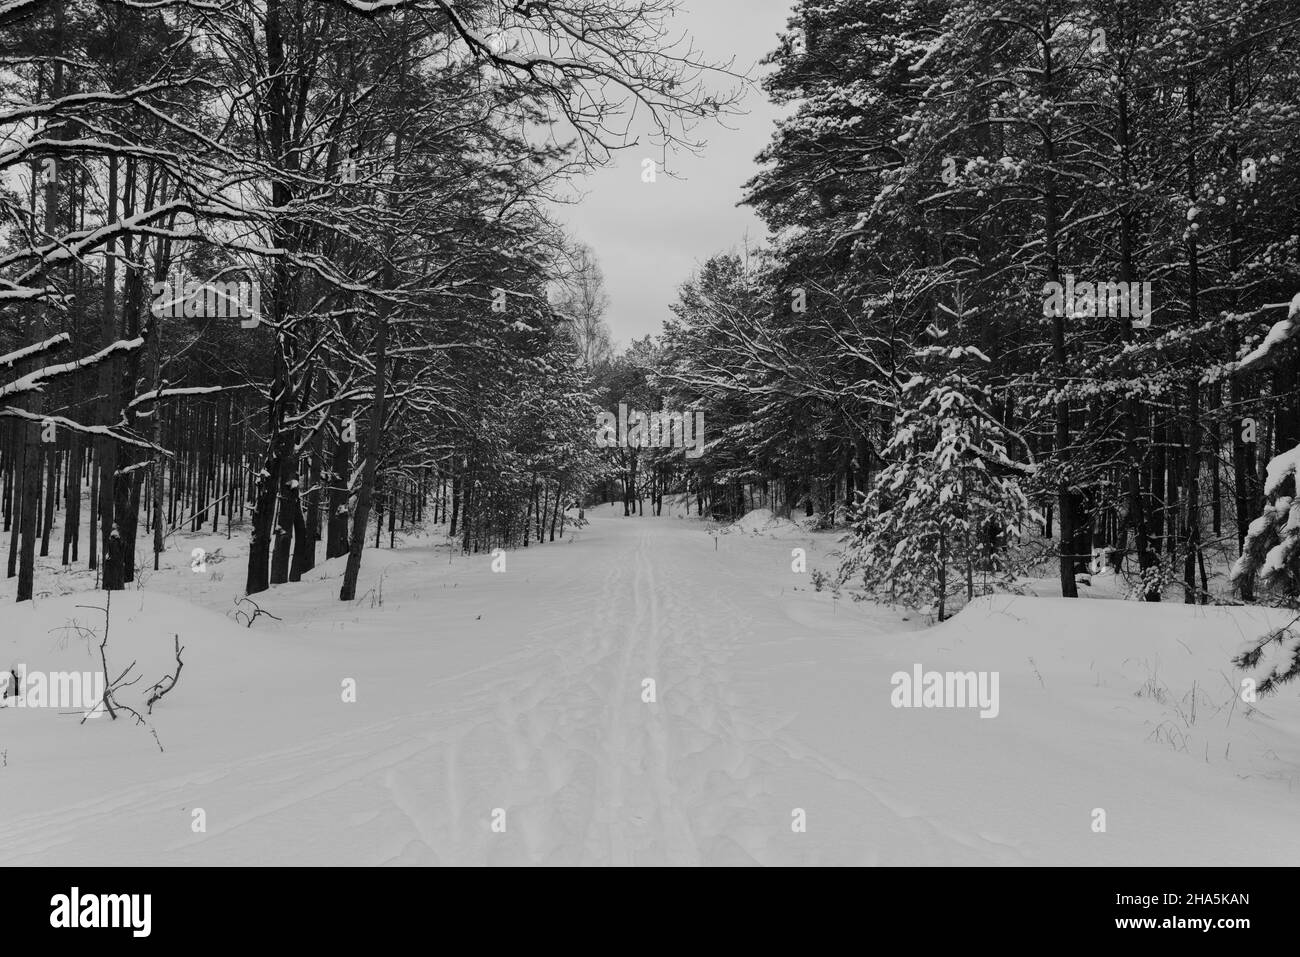 route forestière enneigée en hiver, pistes de skieurs et de marcheurs dans la neige, noir et blanc Banque D'Images